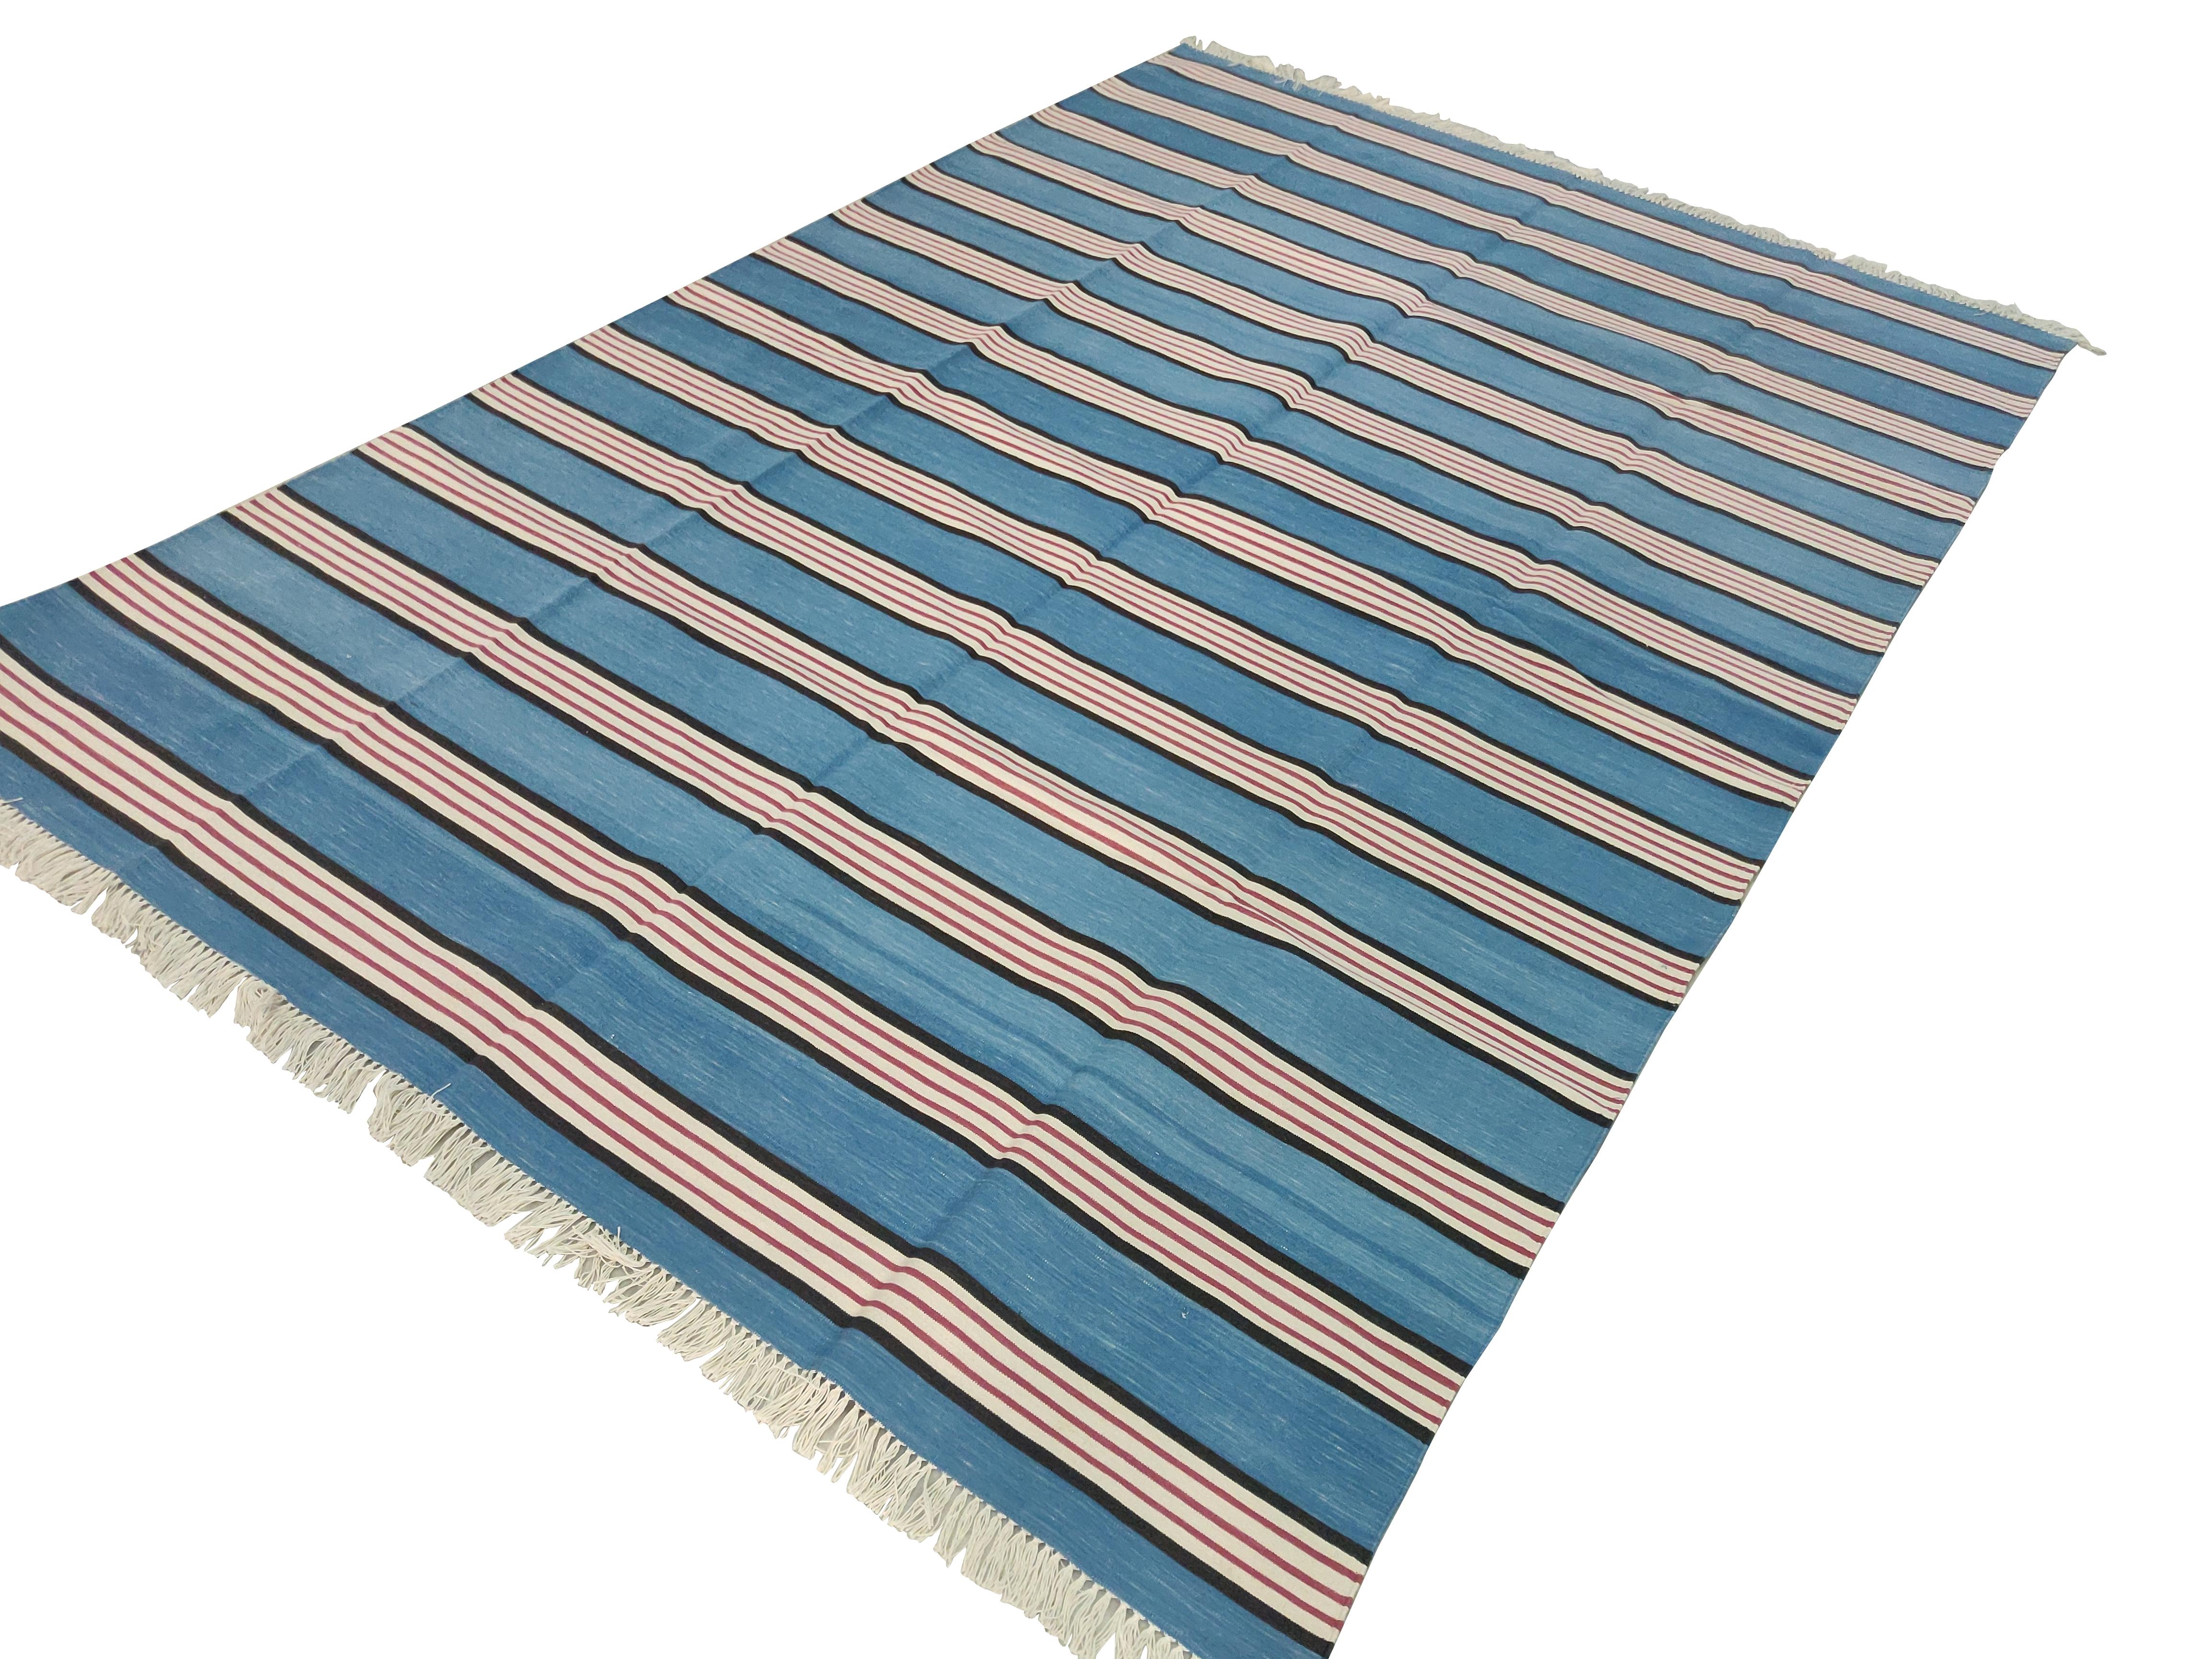 Baumwolle pflanzlich gefärbt blau, kaffeebraun und rosa gestreiften indischen Dhurrie Teppich-6'x9' 
Diese speziellen flachgewebten Dhurries werden aus 15-fachem Garn aus 100% Baumwolle handgewebt. Aufgrund der speziellen Fertigungstechniken, die